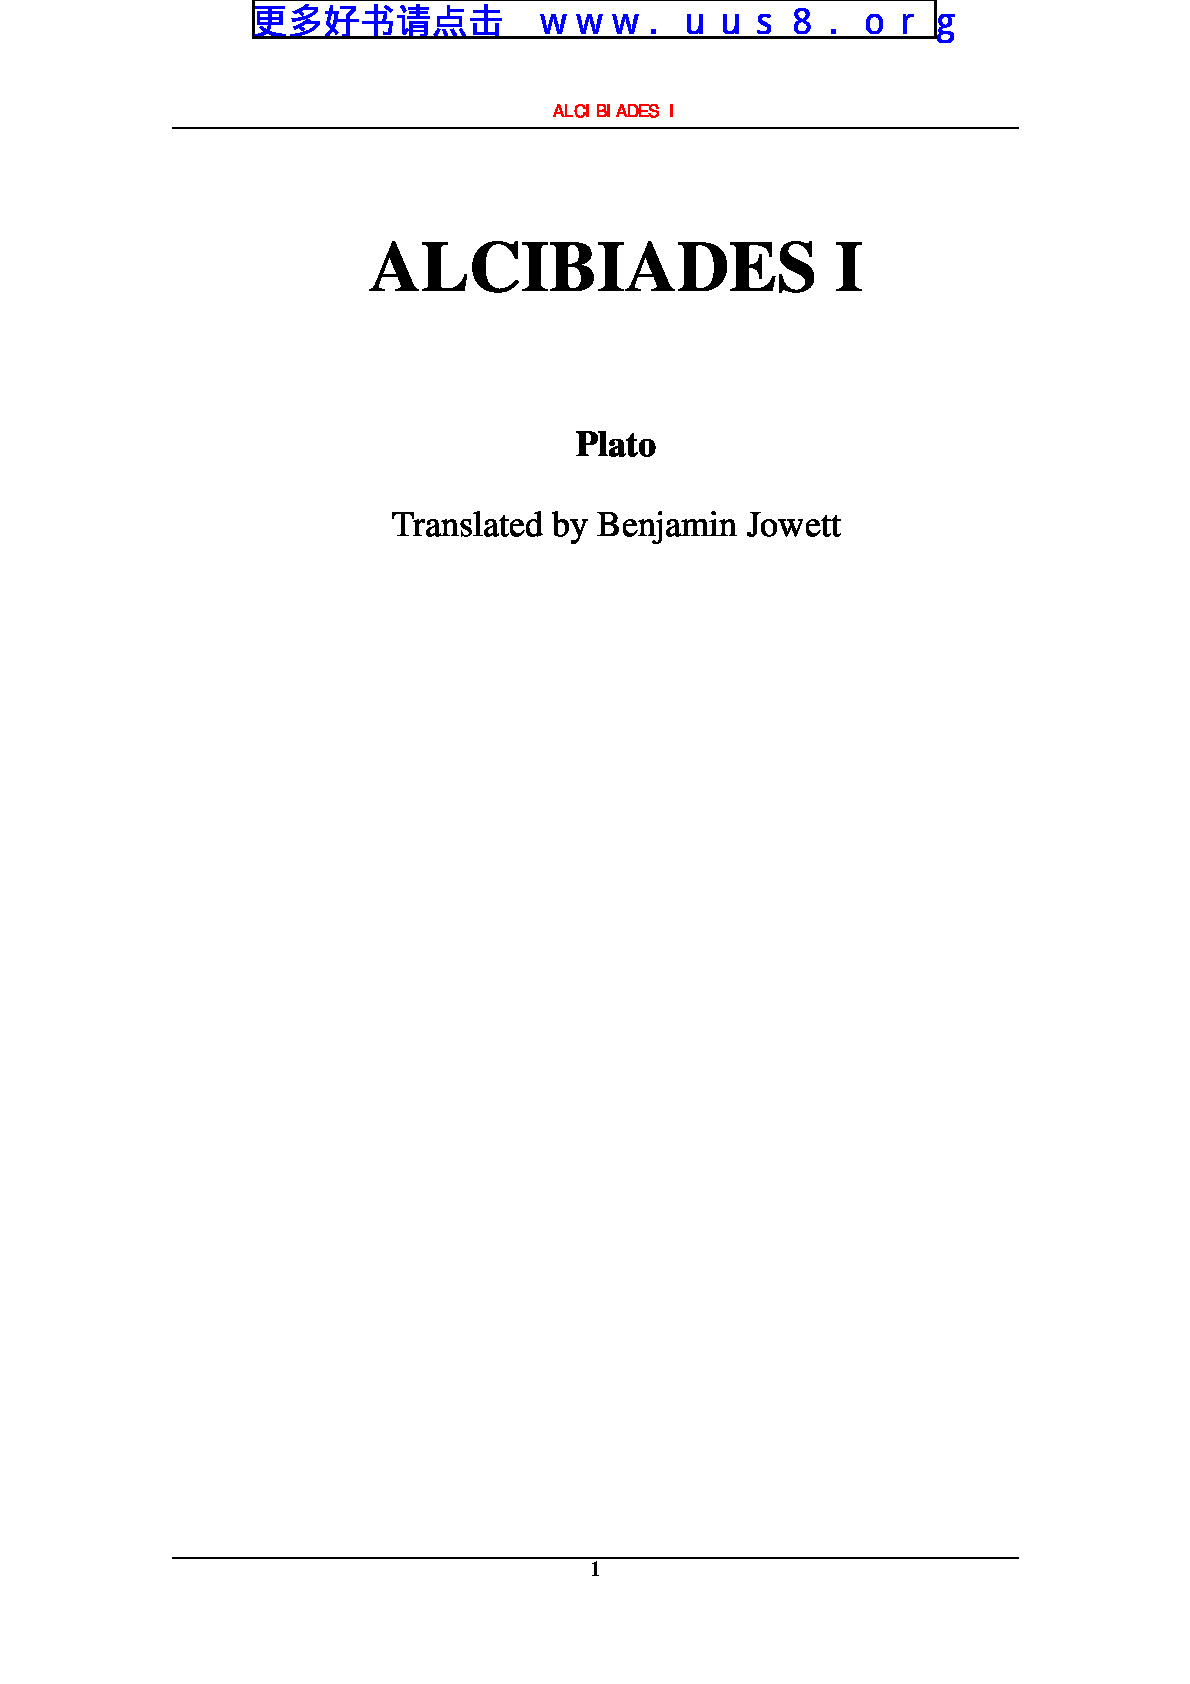 alcibiades_i(阿尔西比得斯工)